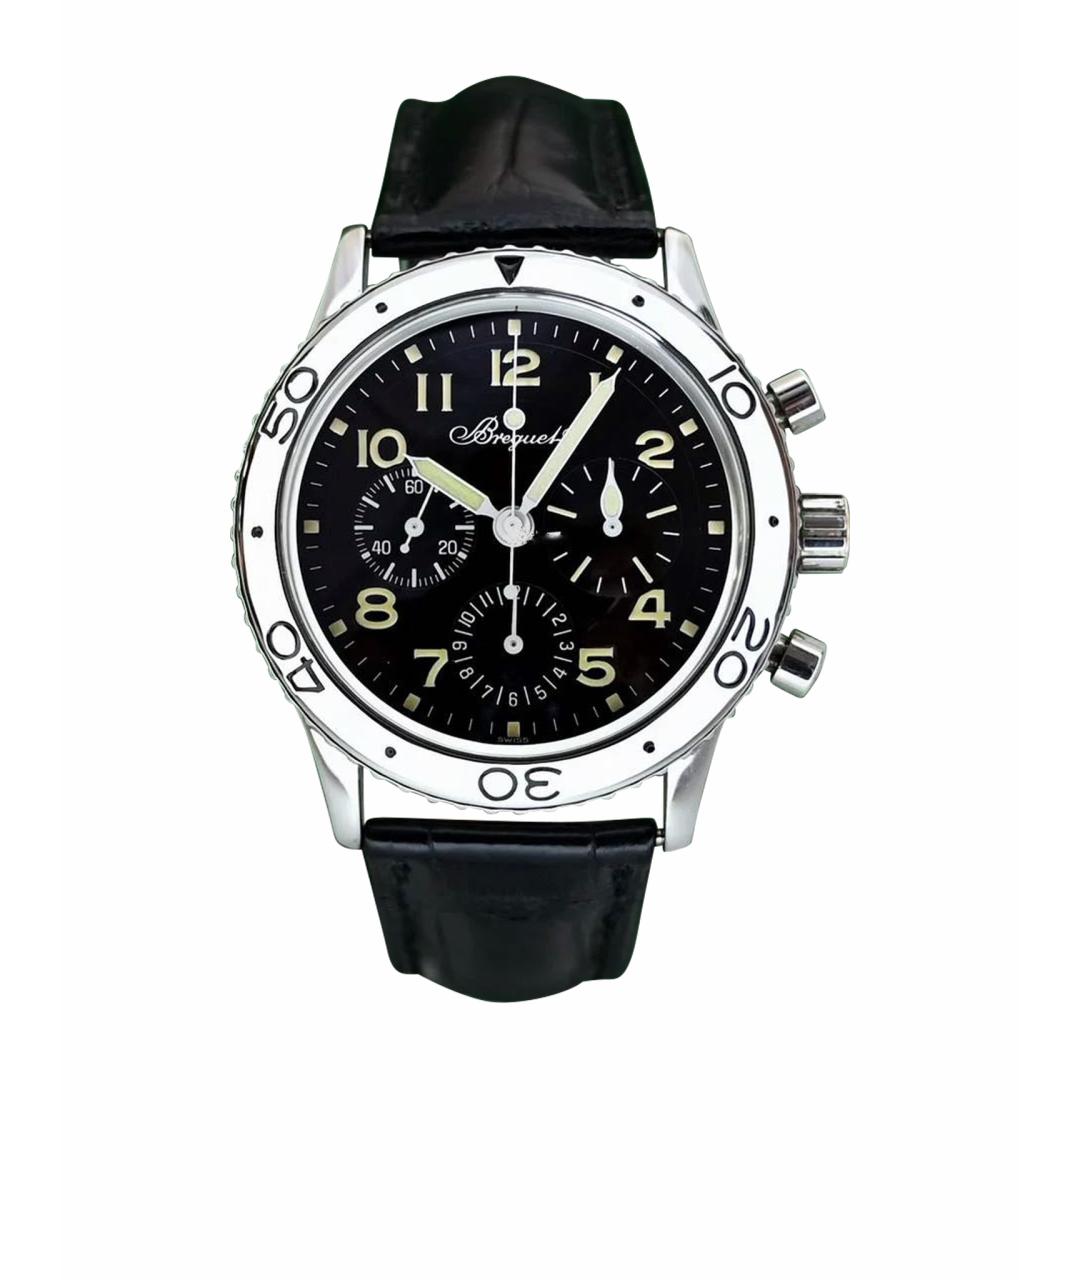 Breguet Черные металлические часы, фото 1